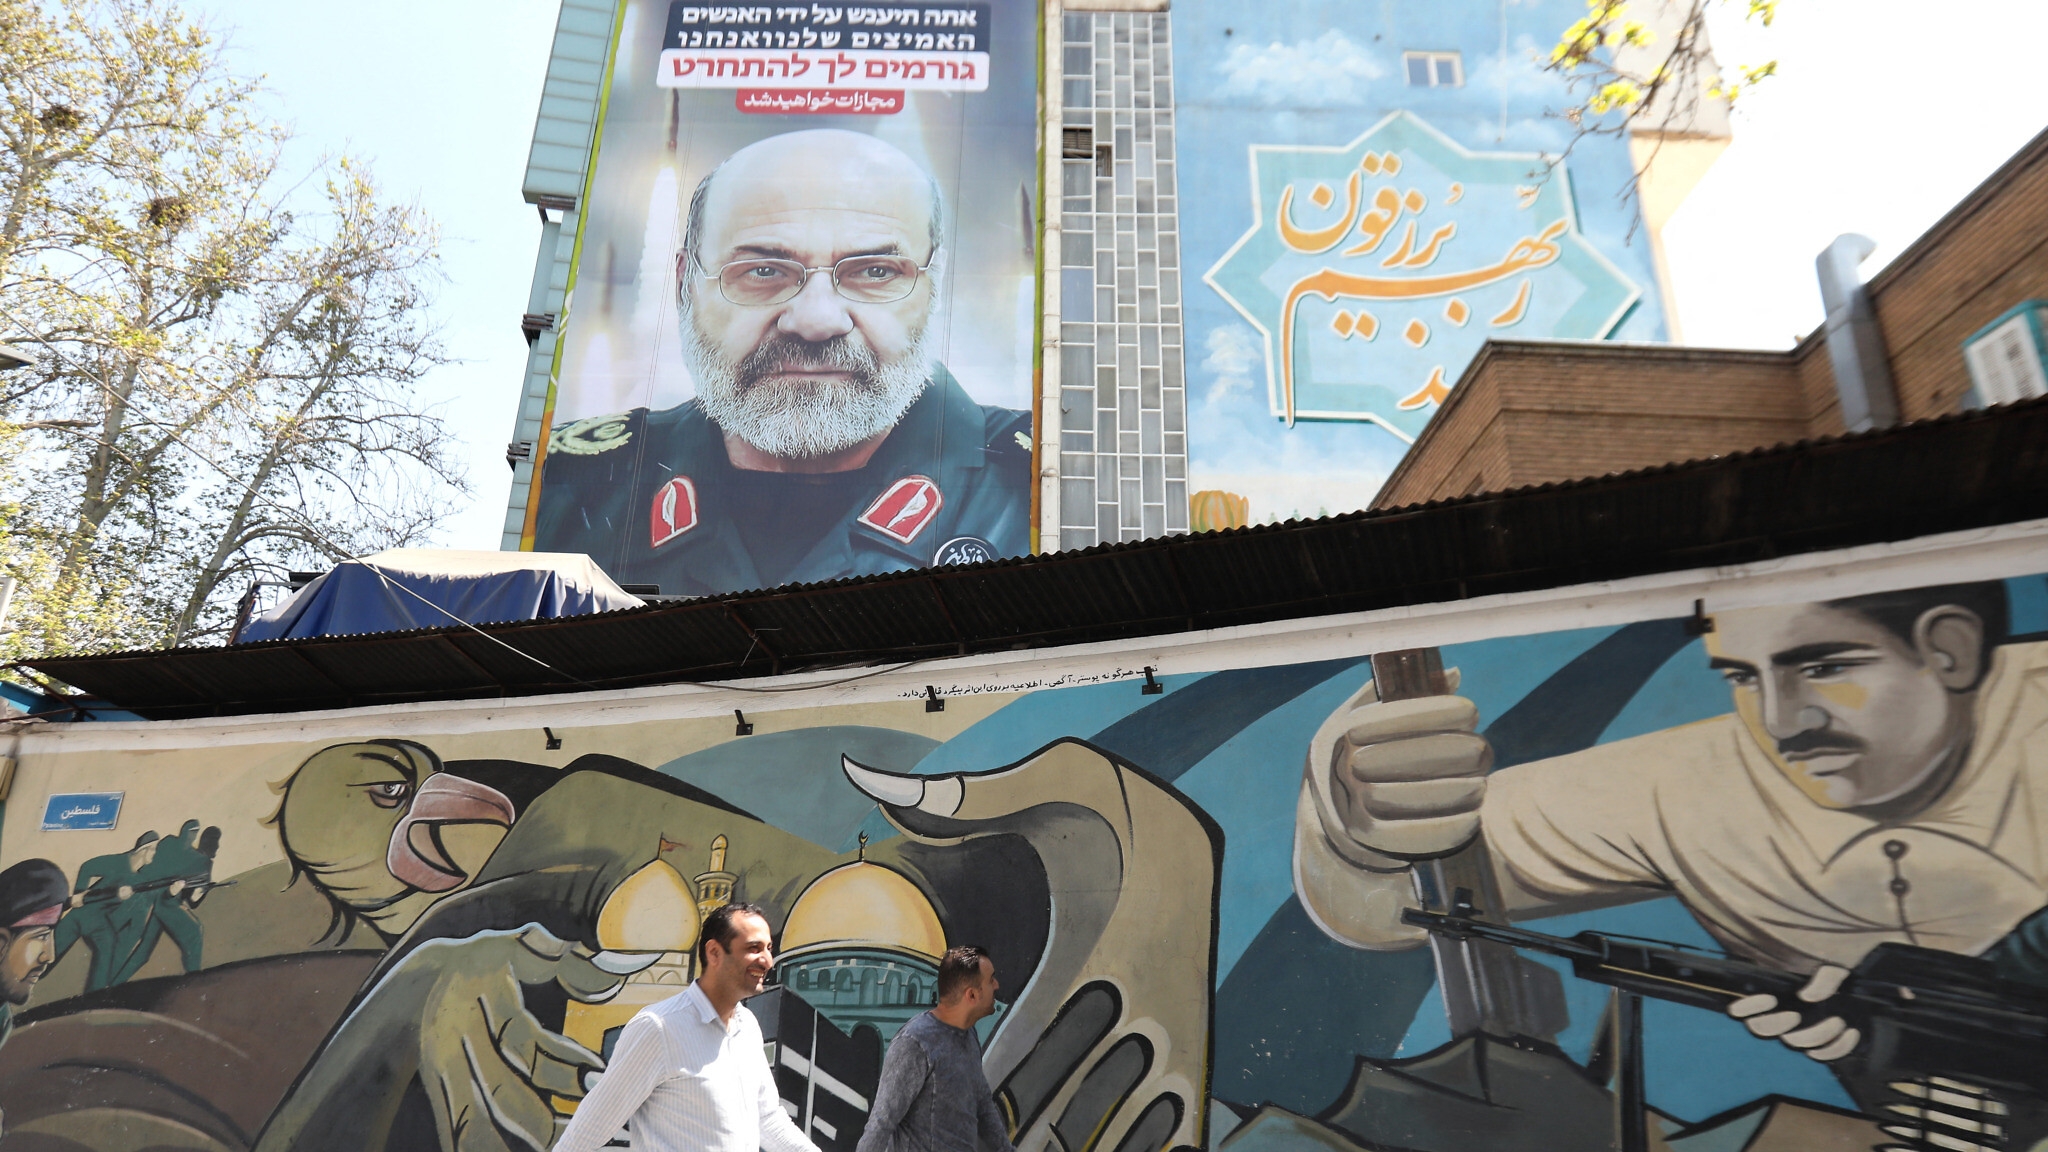 مارة في طهران أمام صورة للعميد محمد رضا زاهدي، الذي قتل في ضربة جوية في دمشق، مع شعار باللغة العبرية يقول 'سوف يُعاقب الفاعل'